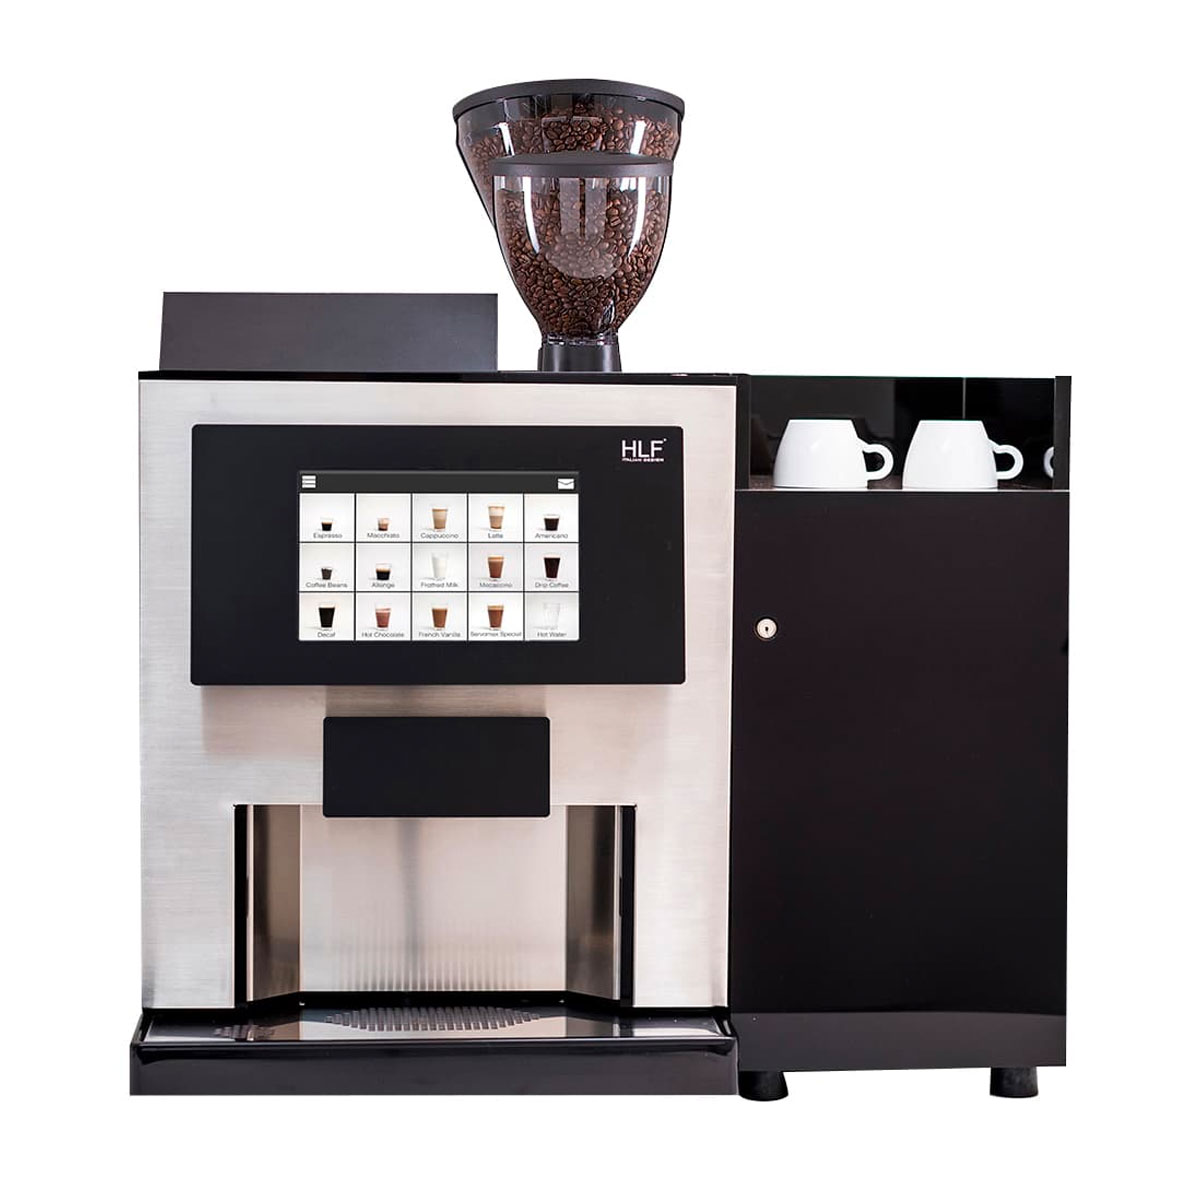 Nespresso HLF 4700 coffee machine